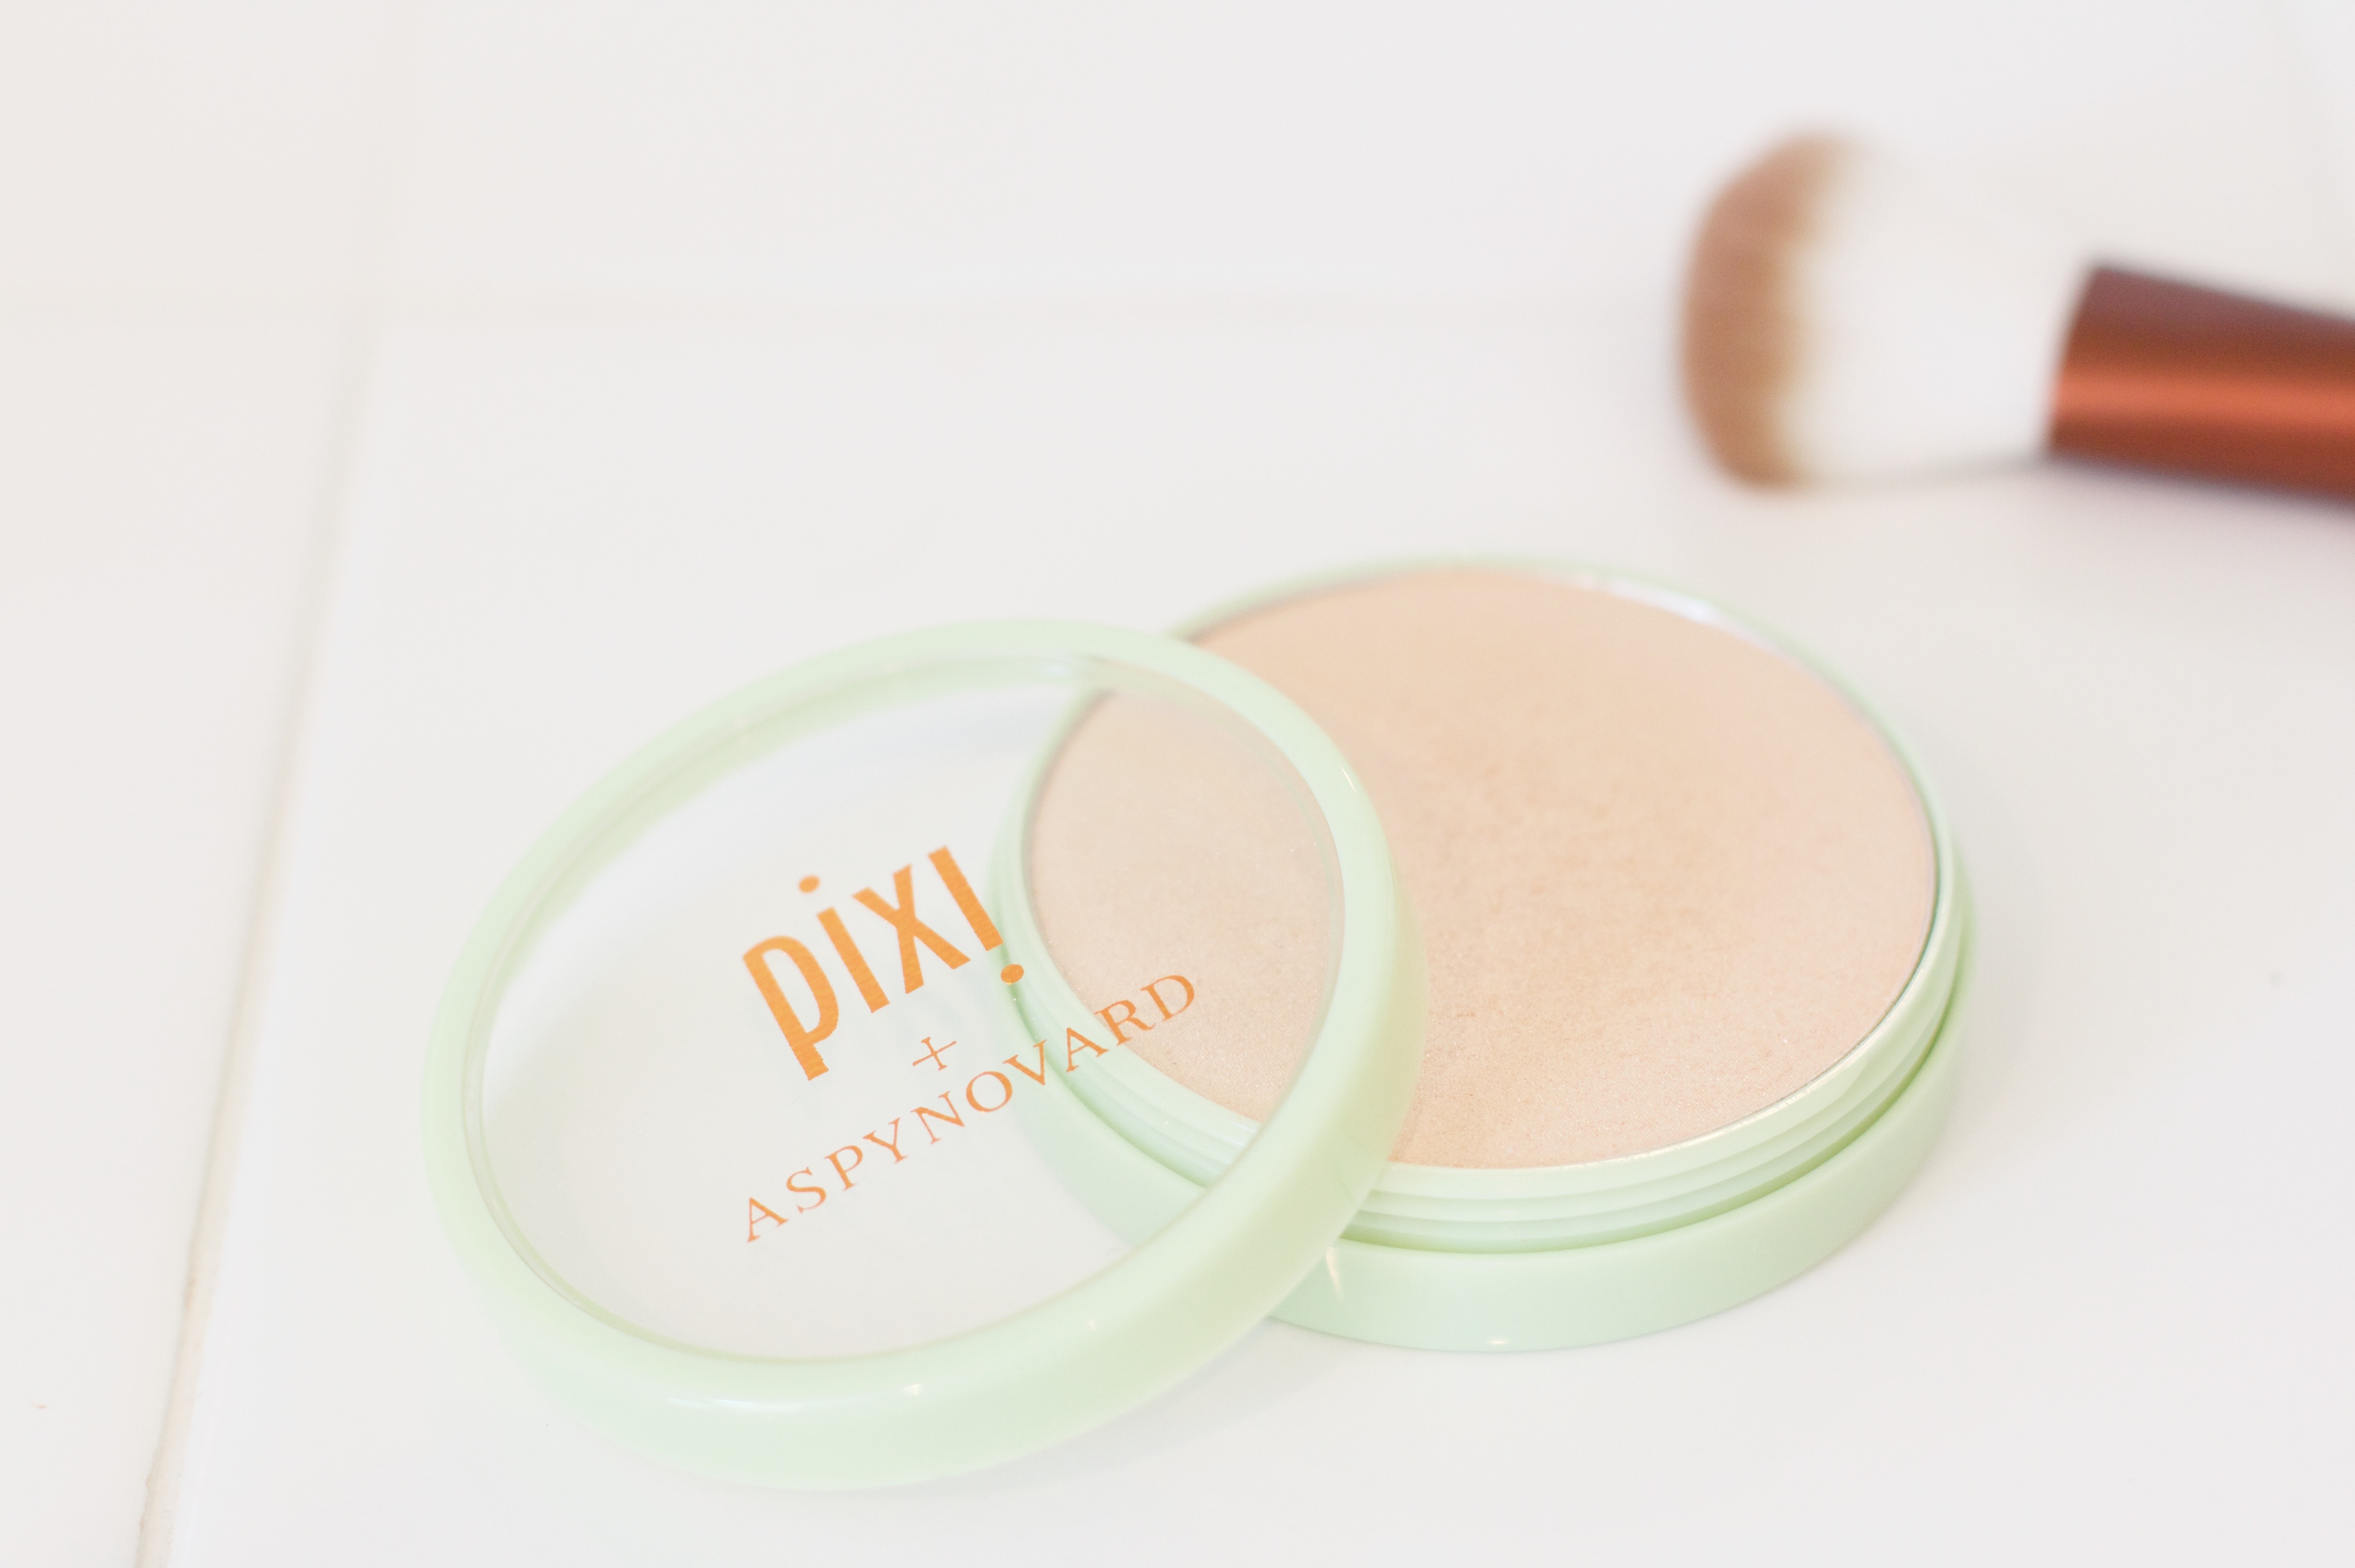 Pixi By Petra + Aspynovard Glow-y Powder review